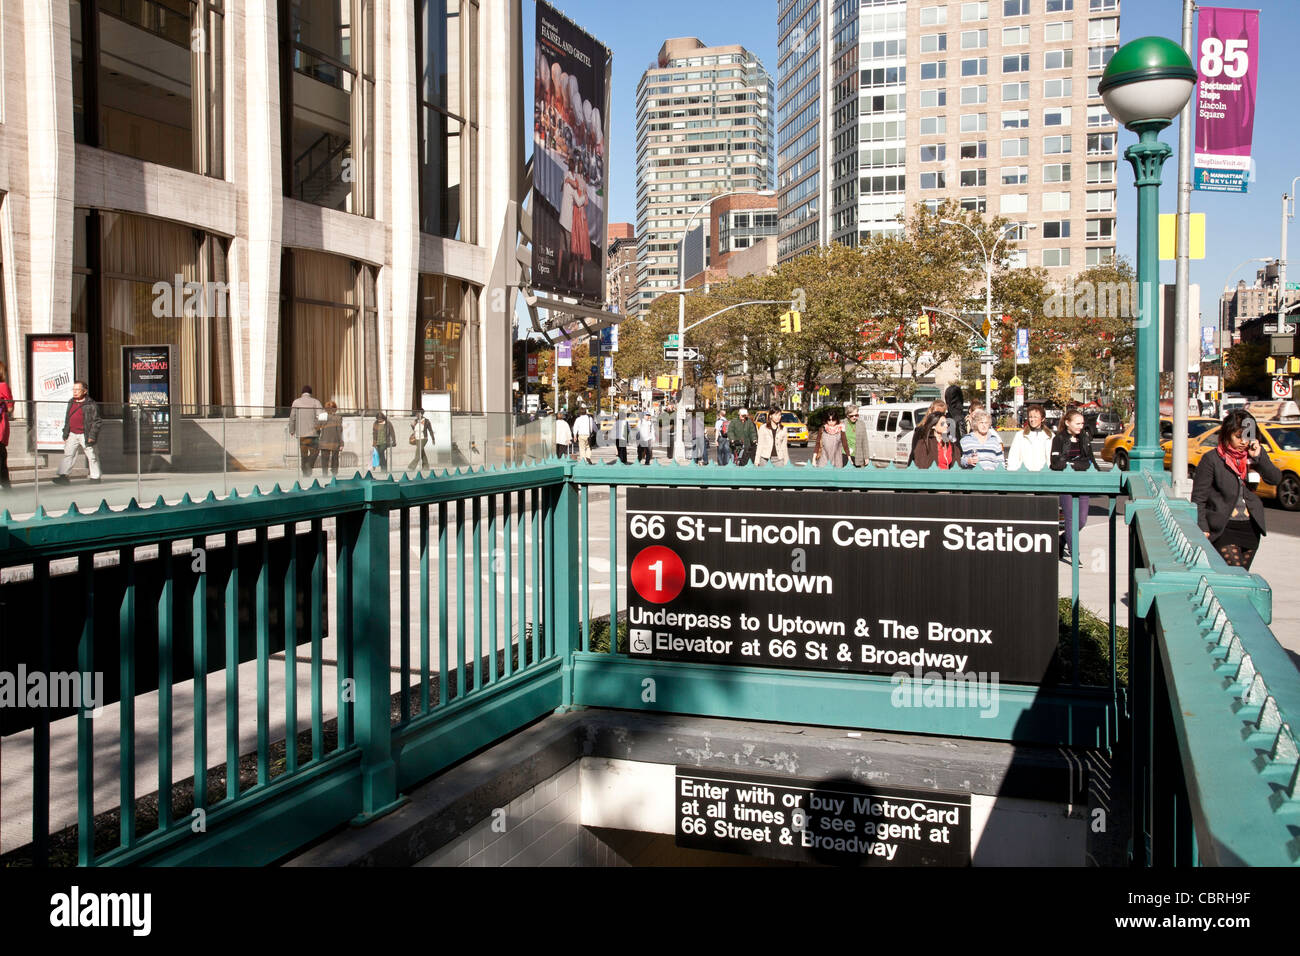 Numéro 1, entrée de la station de métro 66th Street at Lincoln Center, NEW YORK CITY Banque D'Images